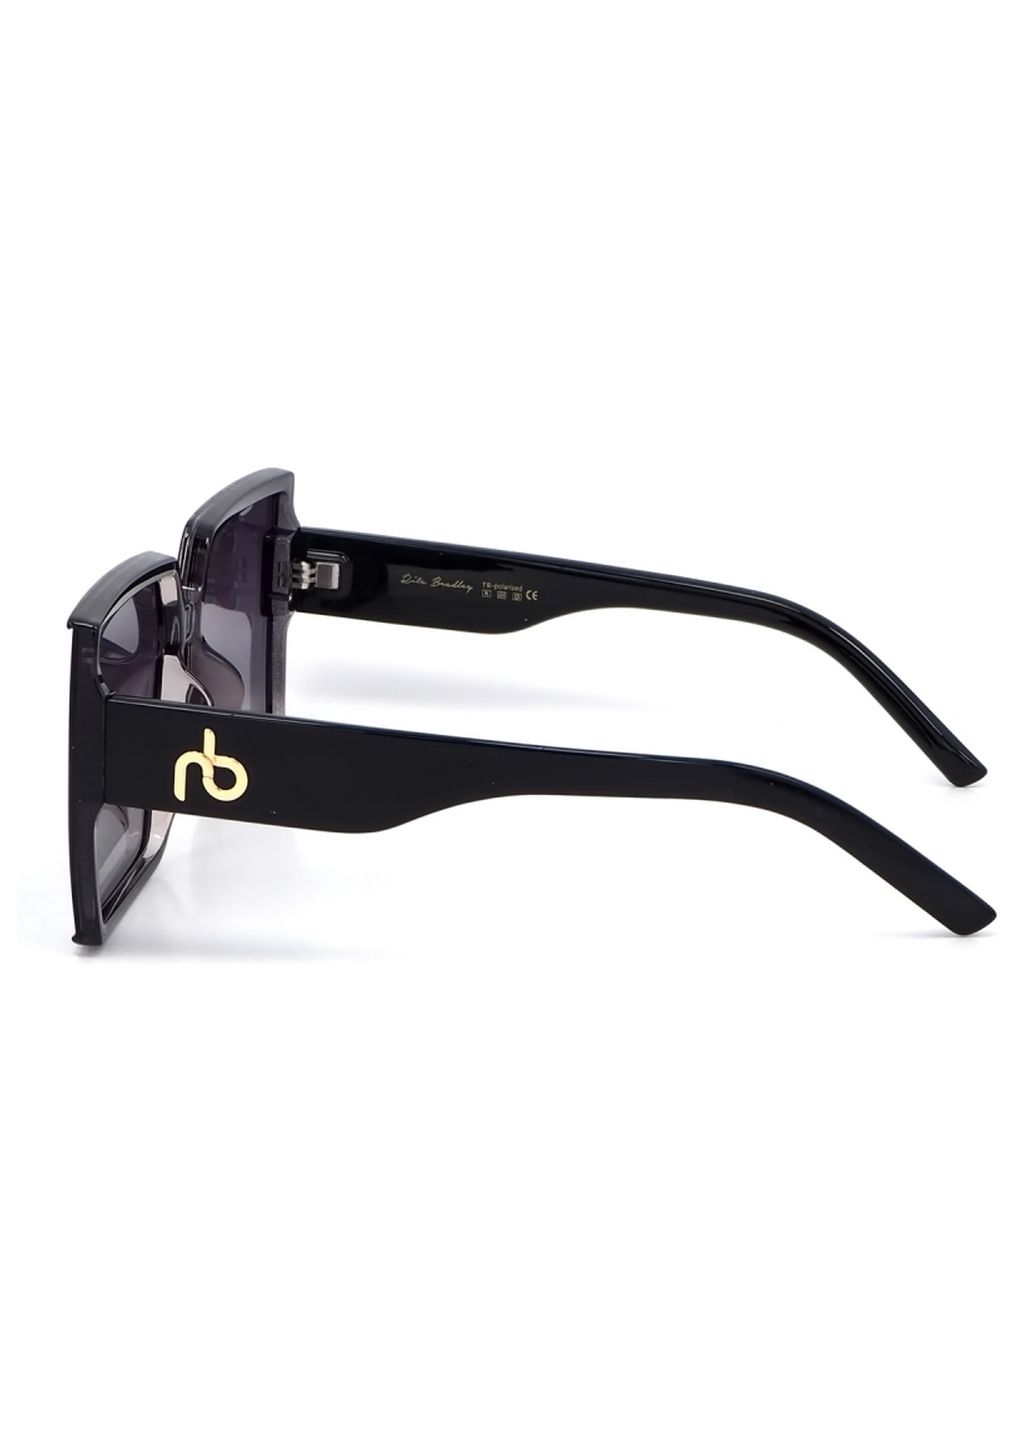 Купить Женские солнцезащитные очки Rita Bradley с поляризацией RB724 112044 в интернет-магазине